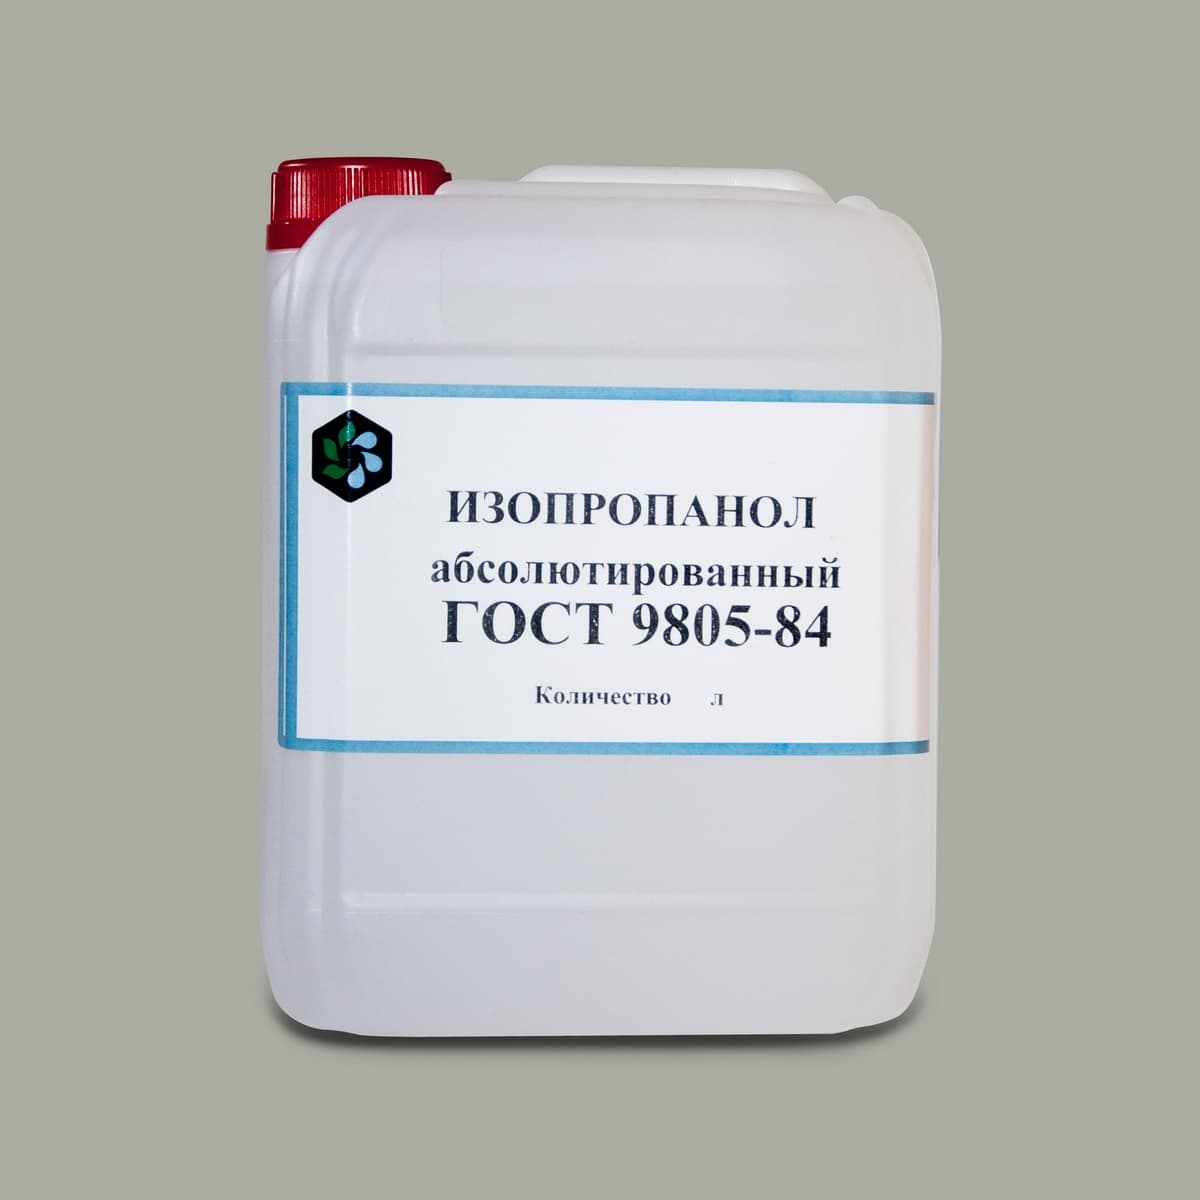 Спирт изопропиловый абсолютированный ГОСТ 9805-84 (5 литров)